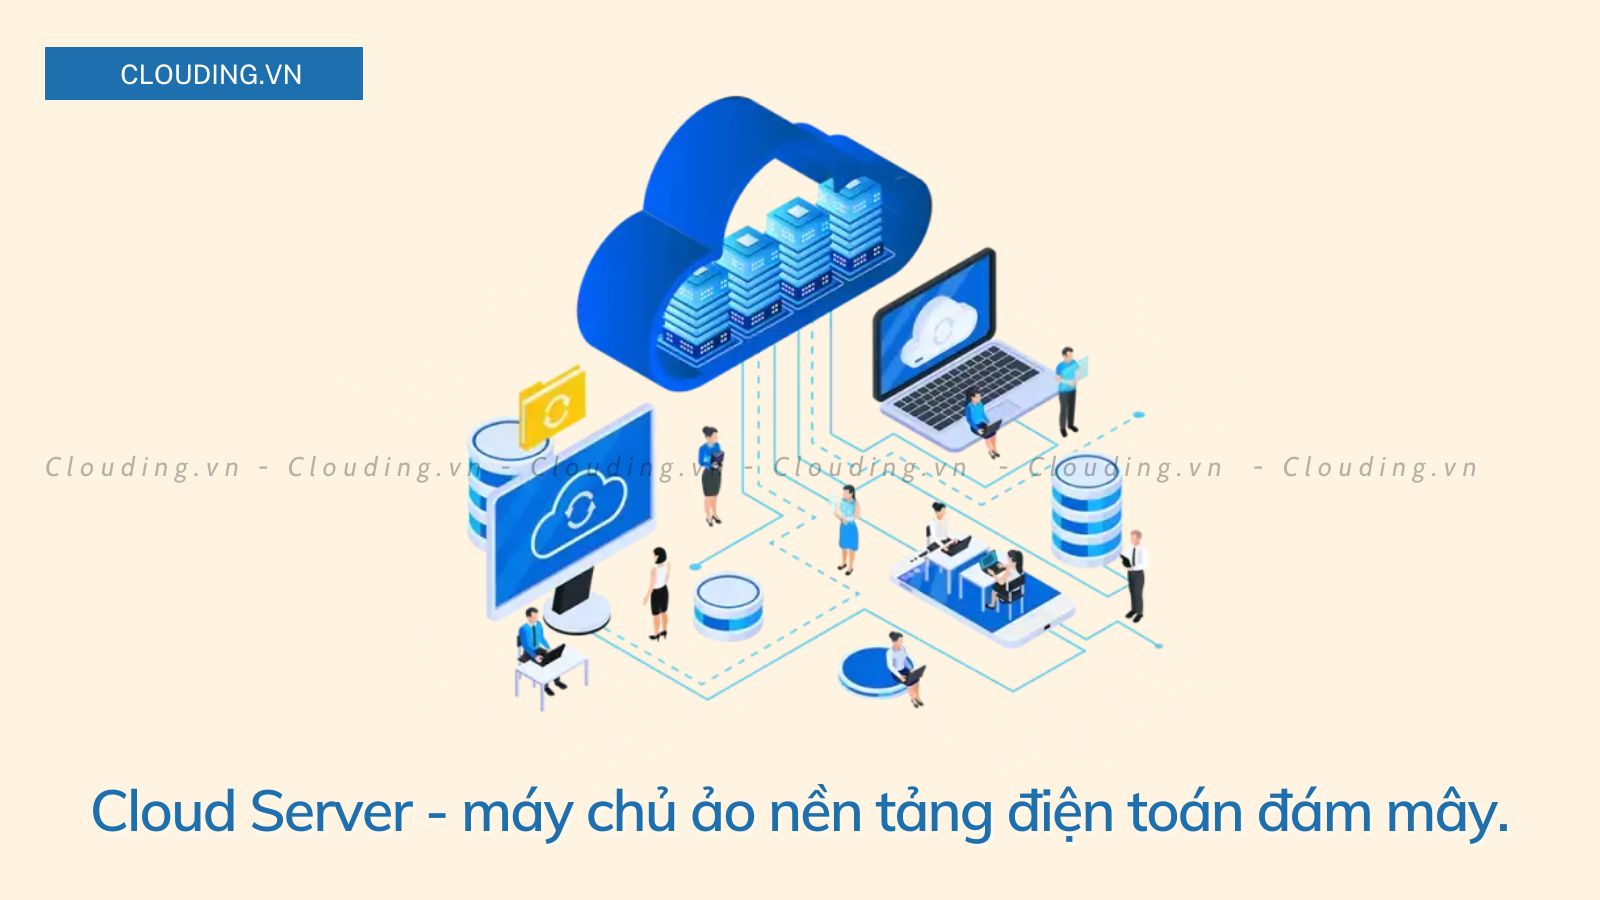 Cloud Server là một máy chủ ảo chạy trong môi trường điện toán đám mây